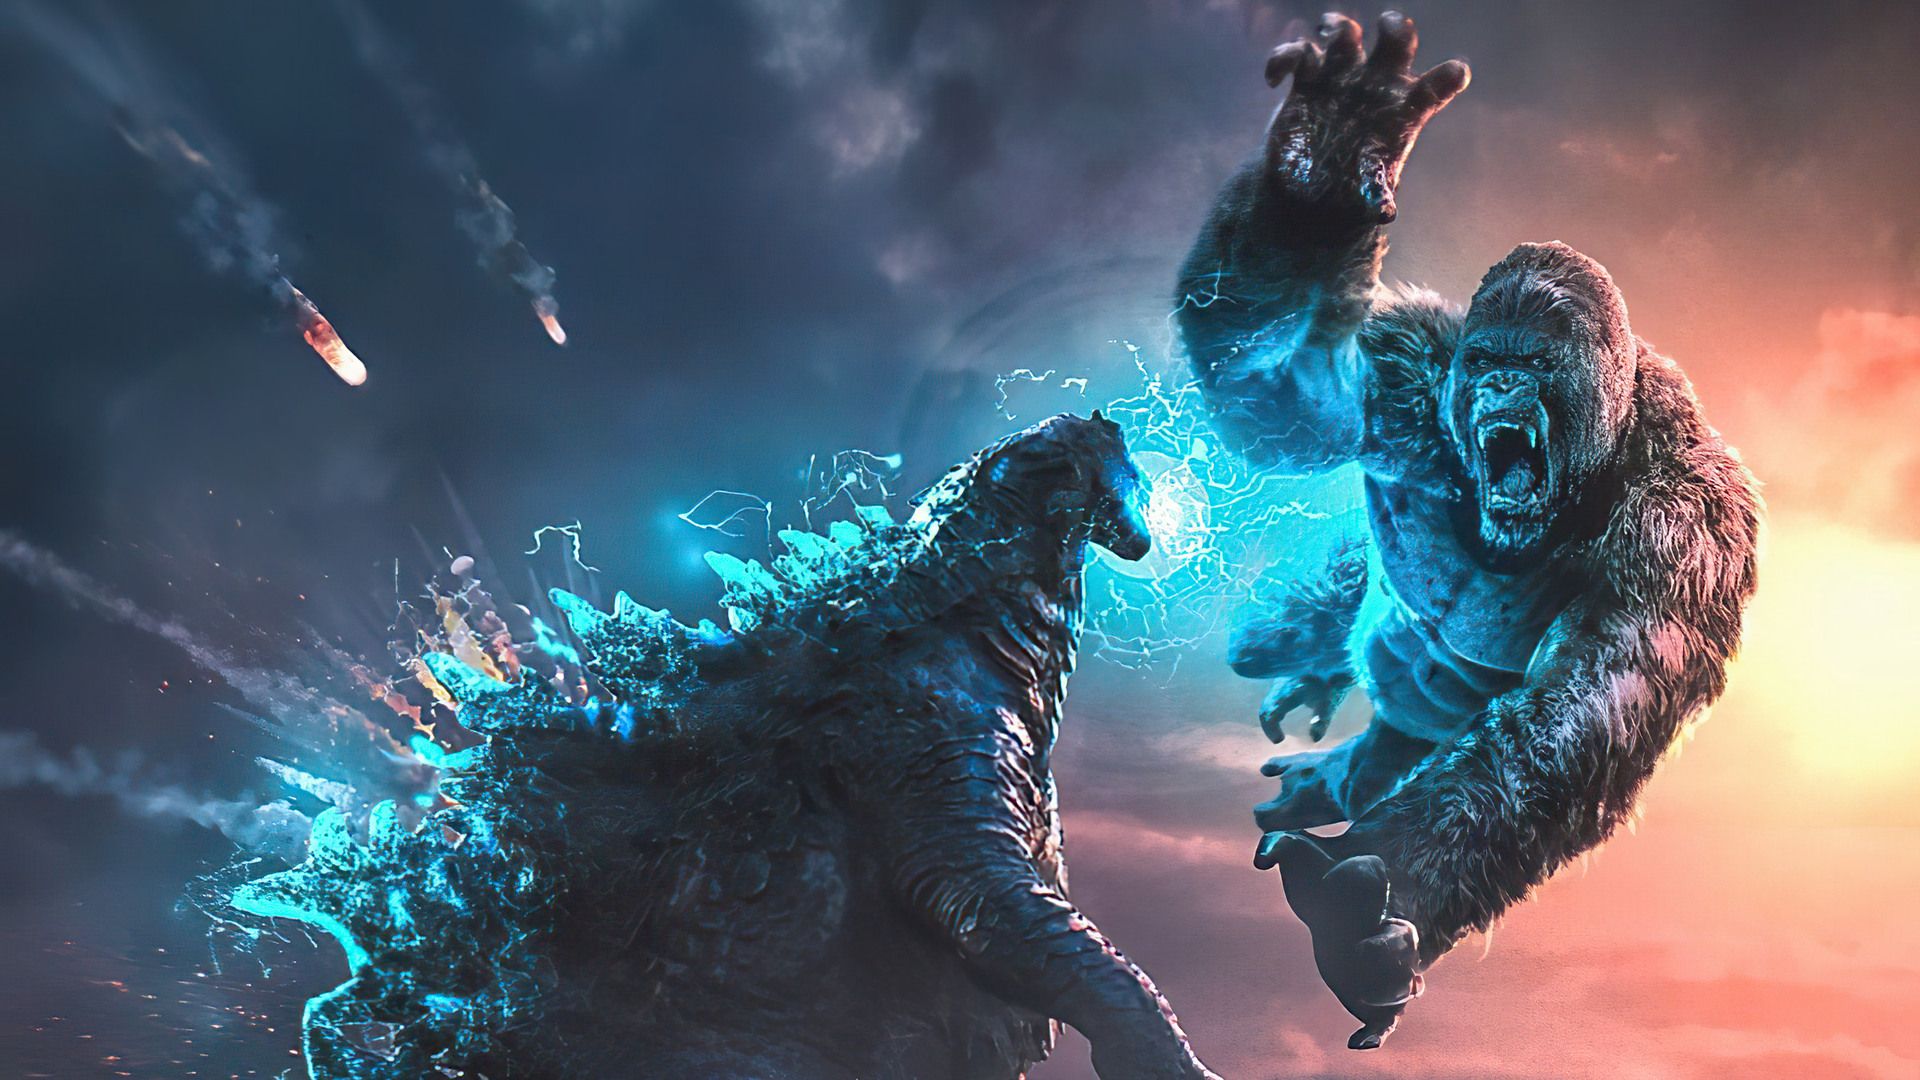 King Kong Versus Godzilla Wallpapers - Wallpaper Cave